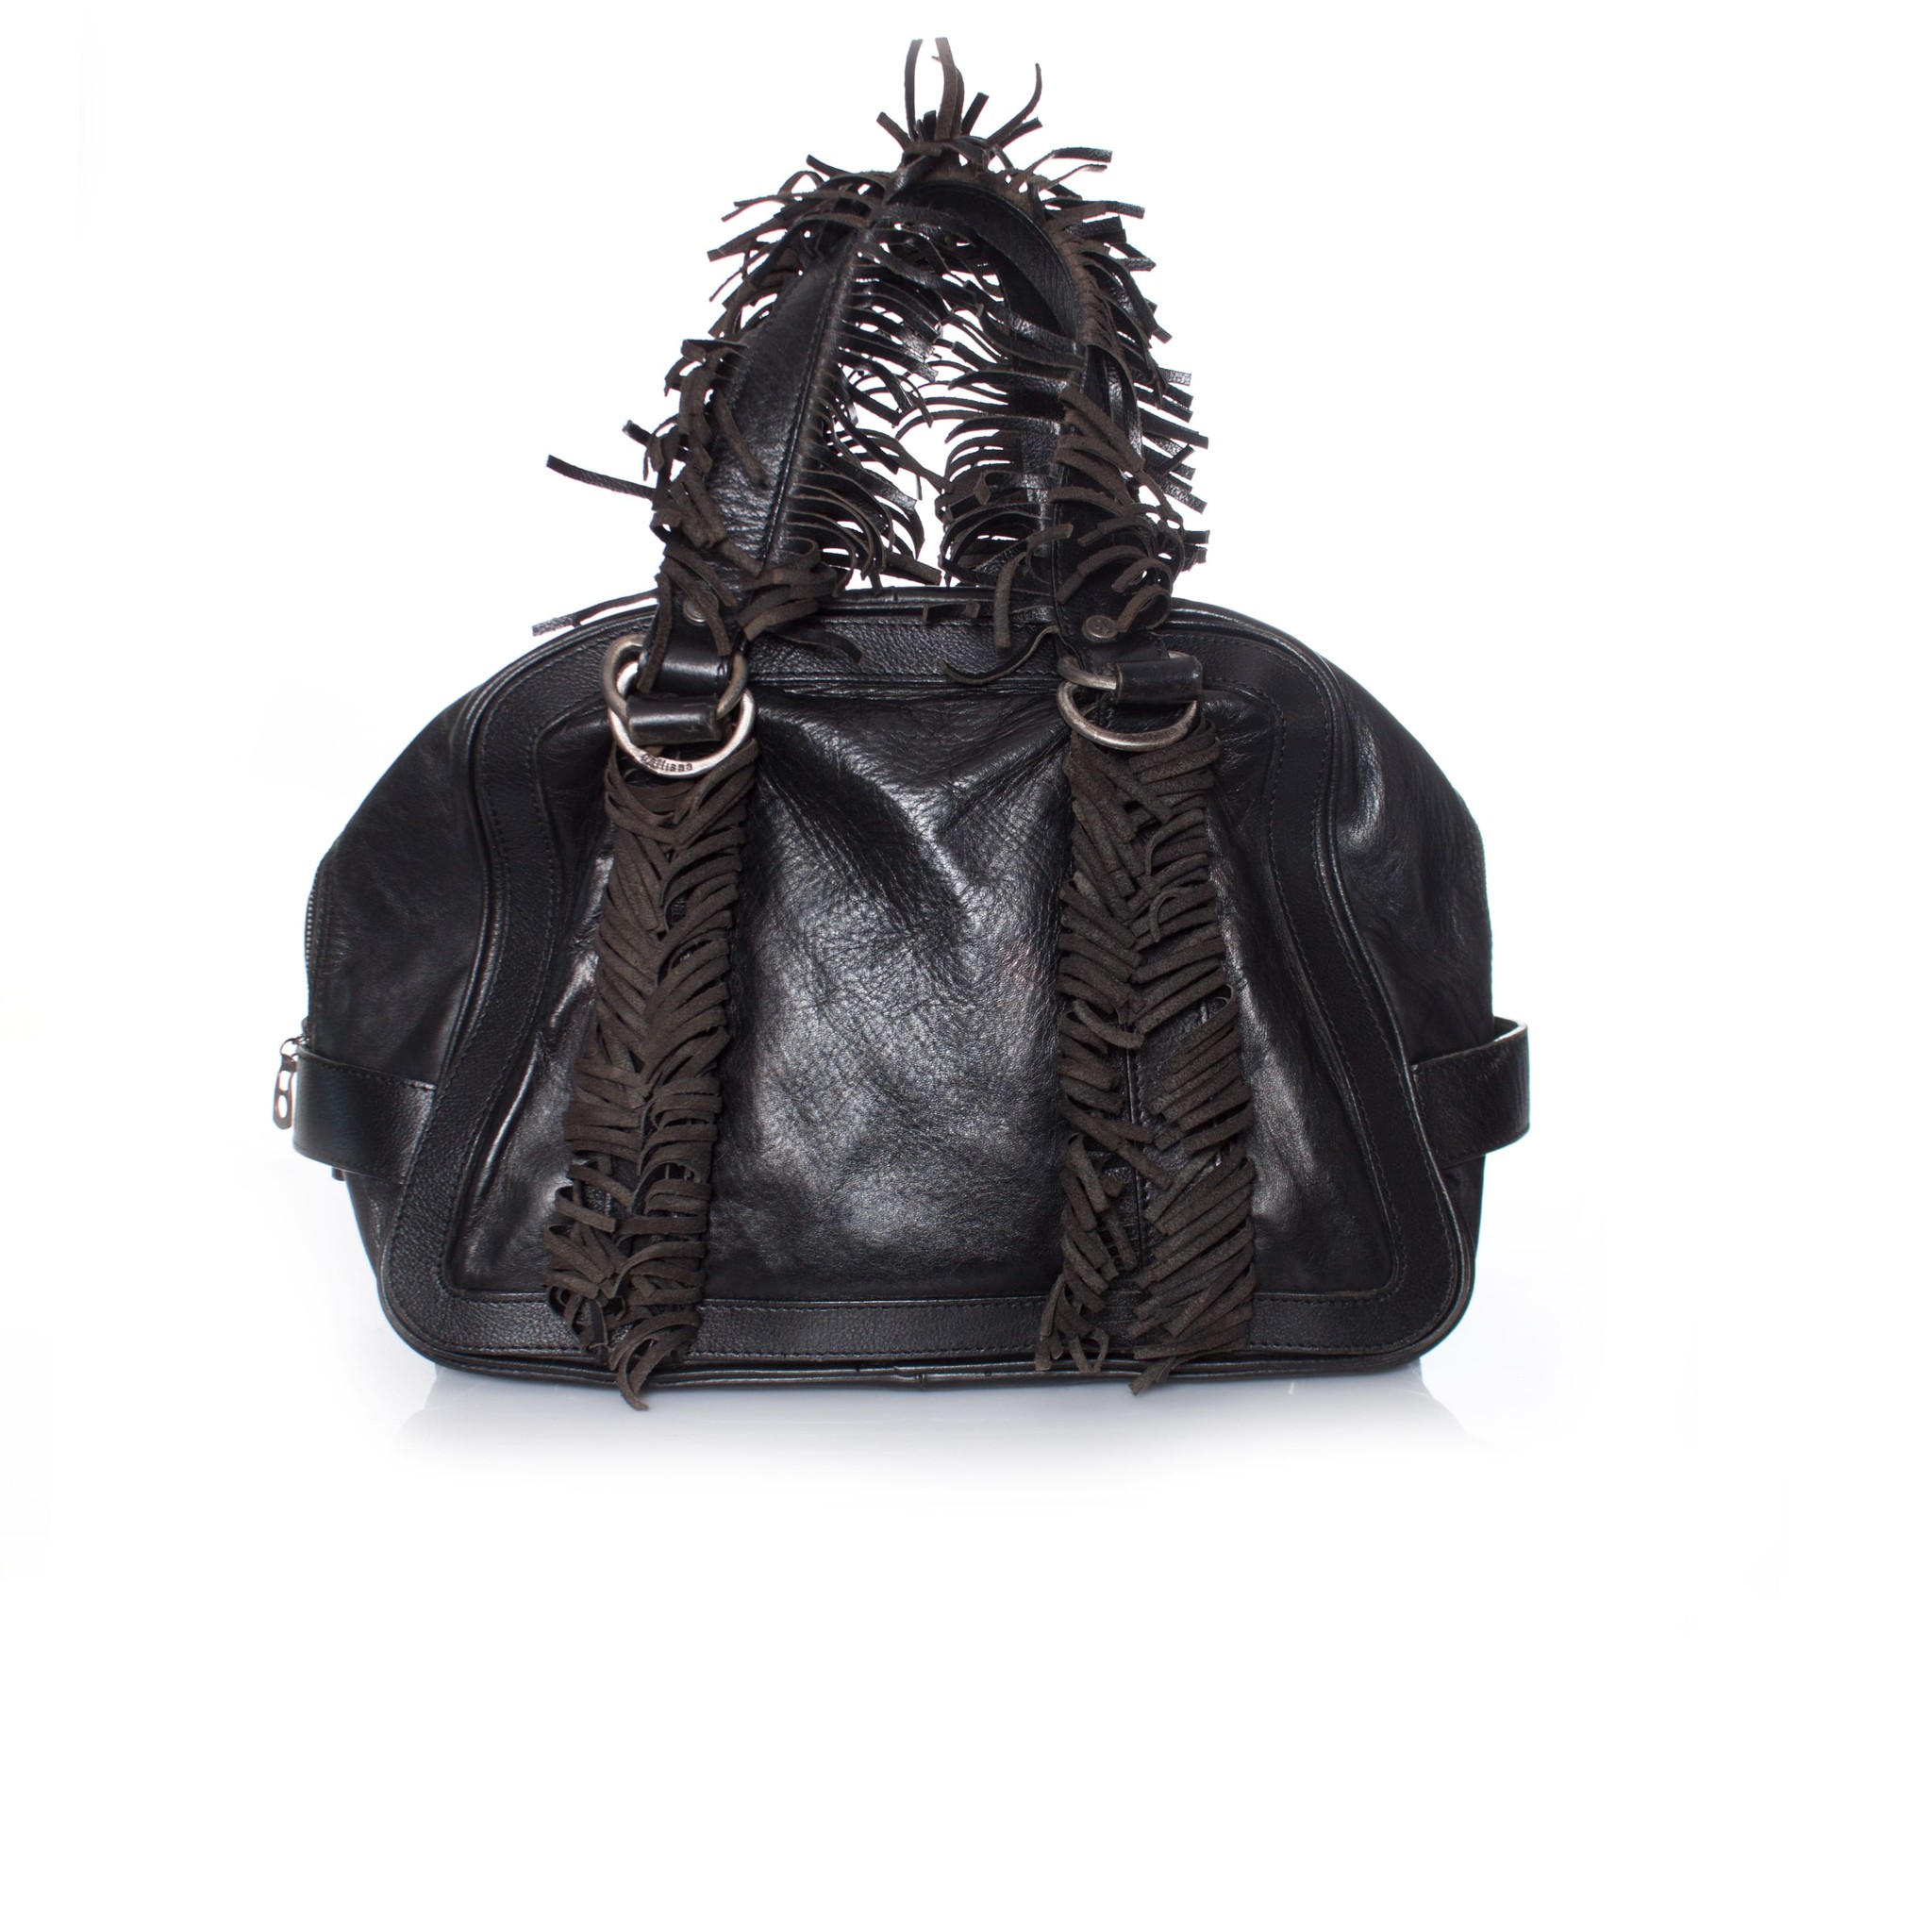 Leather Boho Handbag - Leather Bag with Fringe